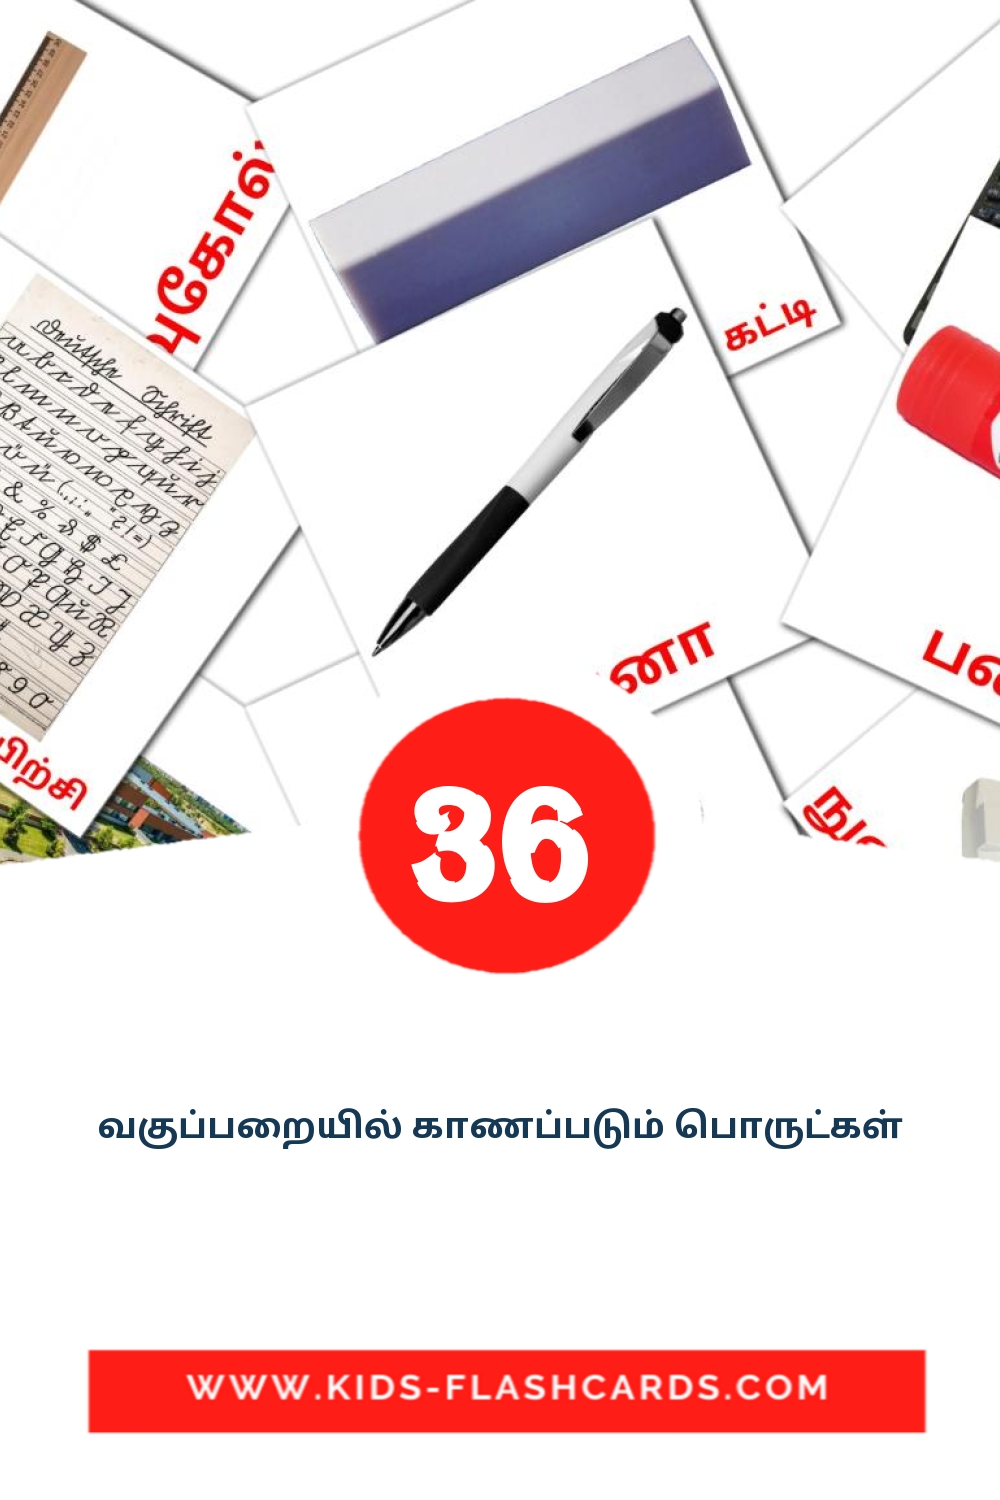 36 வகுப்பறையில் காணப்படும் பொருட்கள் fotokaarten voor kleuters in het tamil